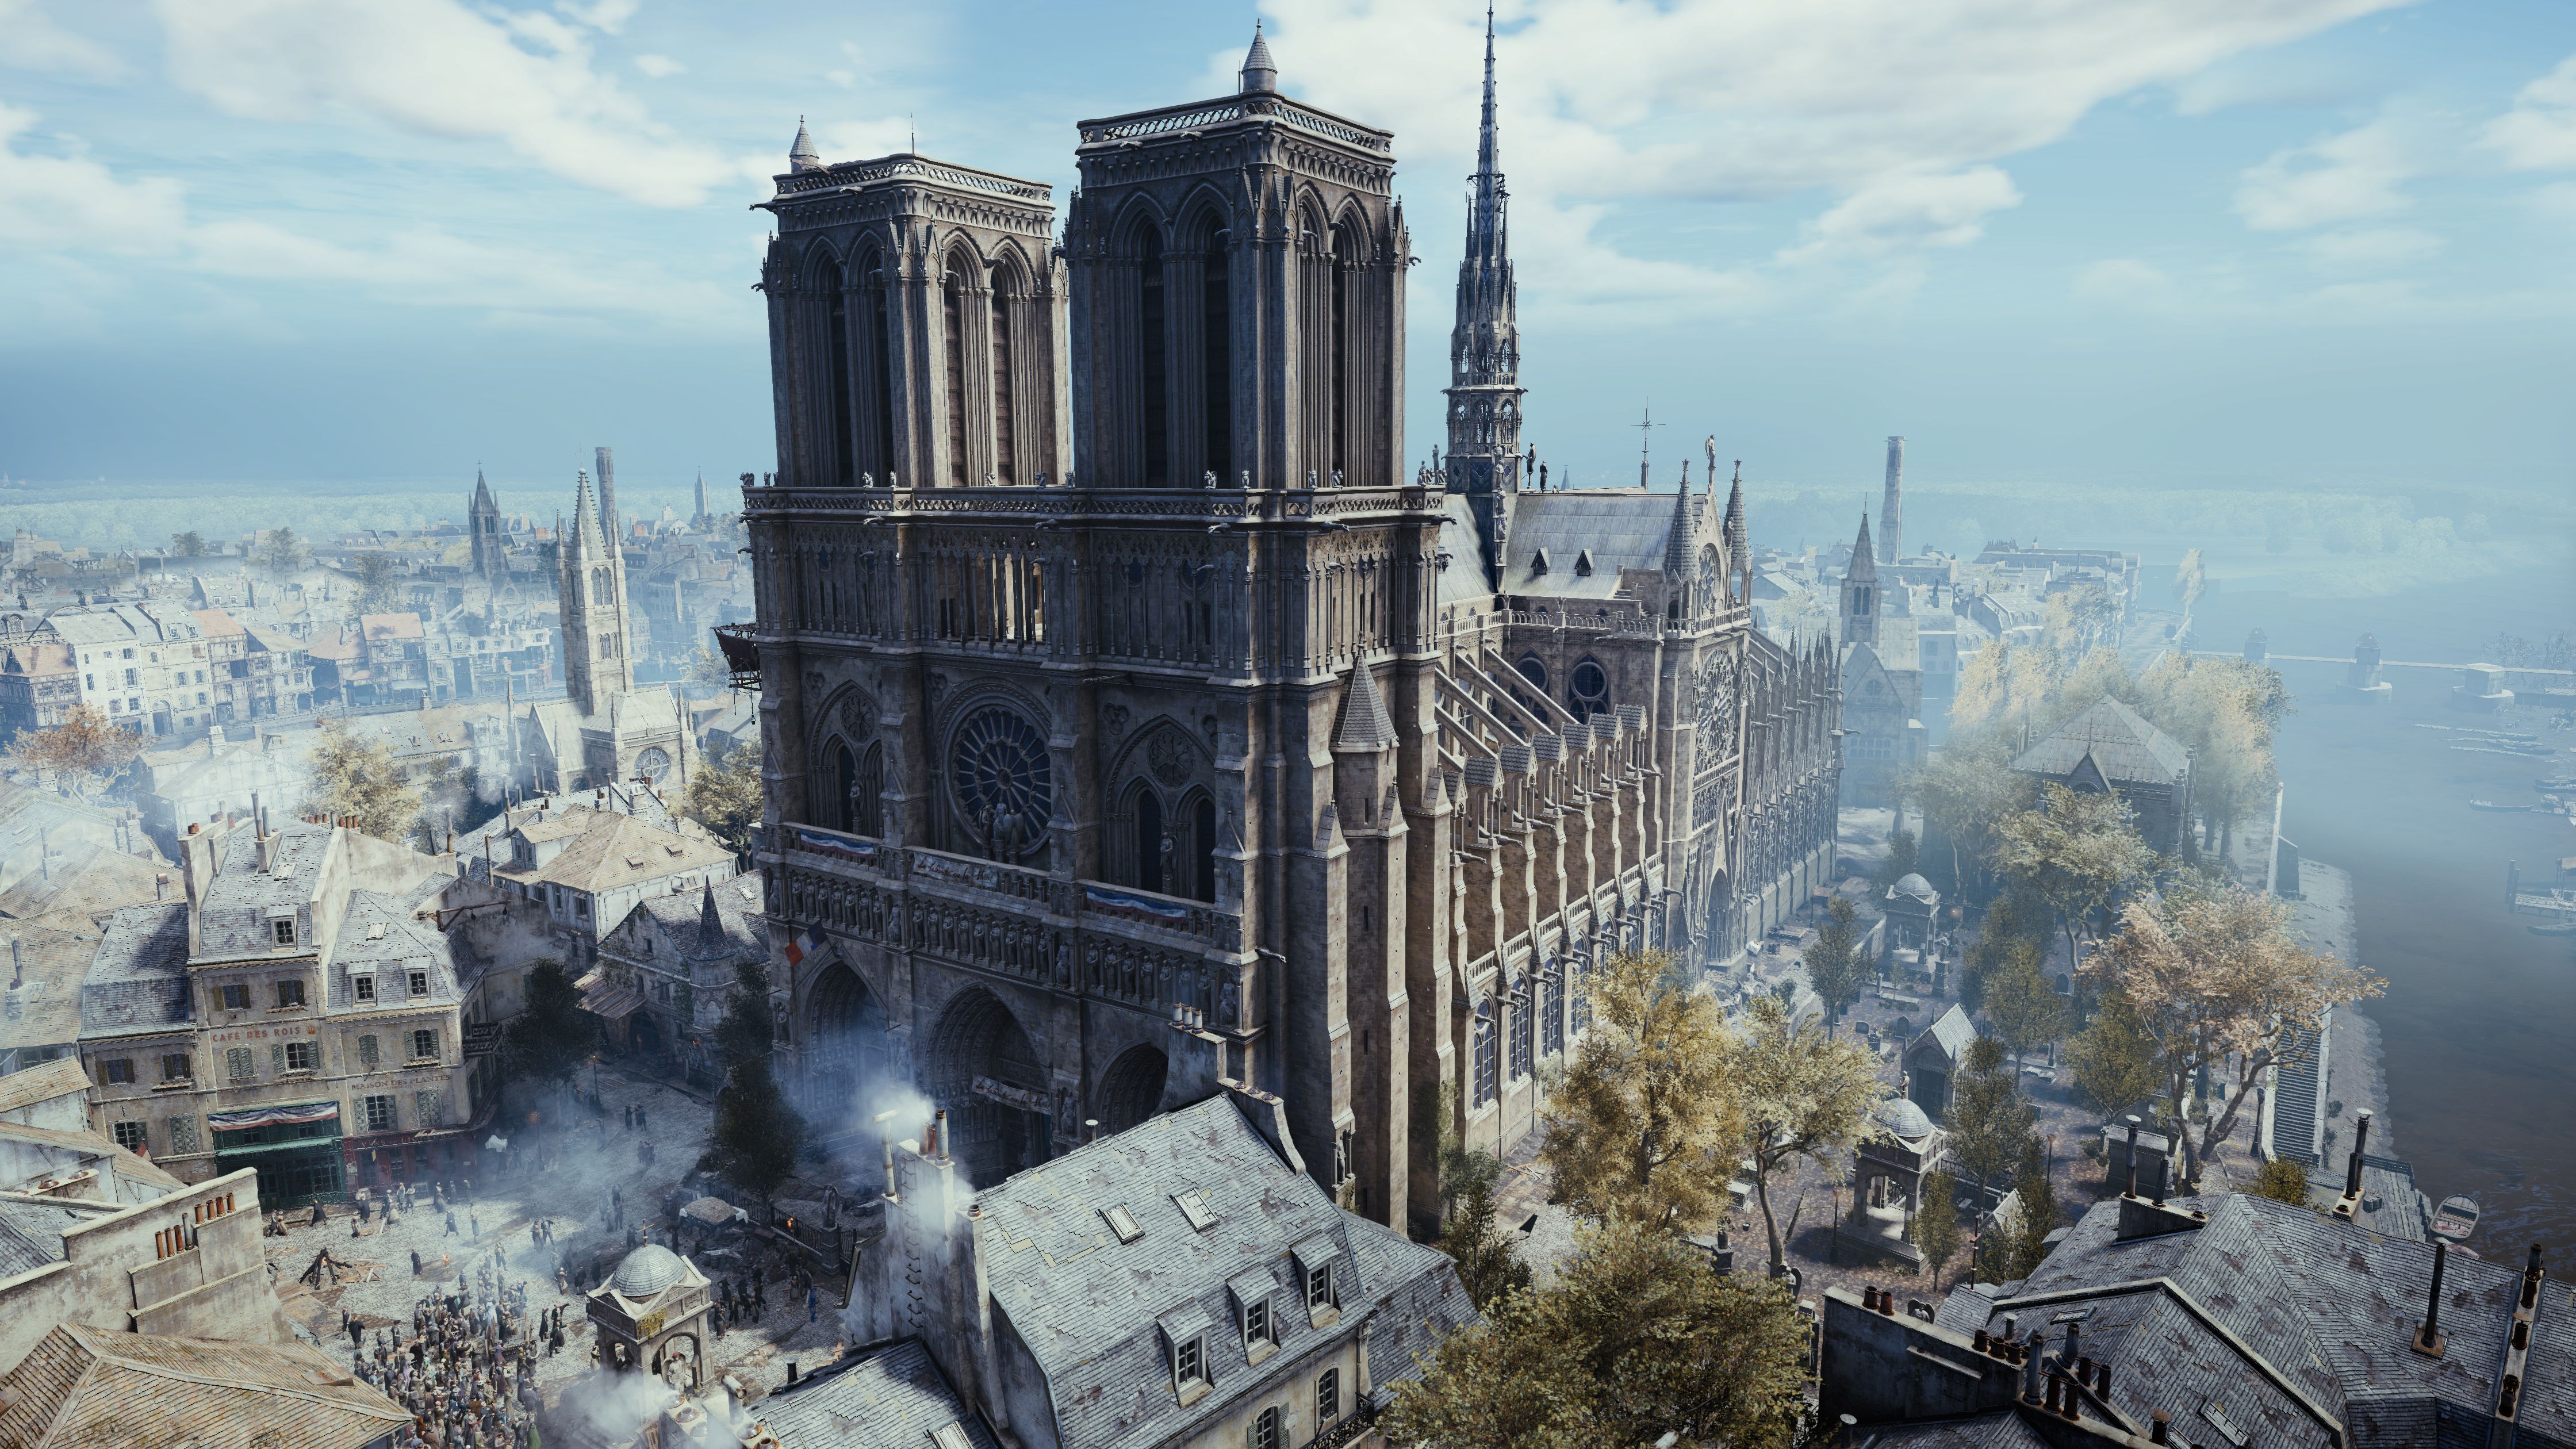 Assassin's Creed Unity, PC - Uplay